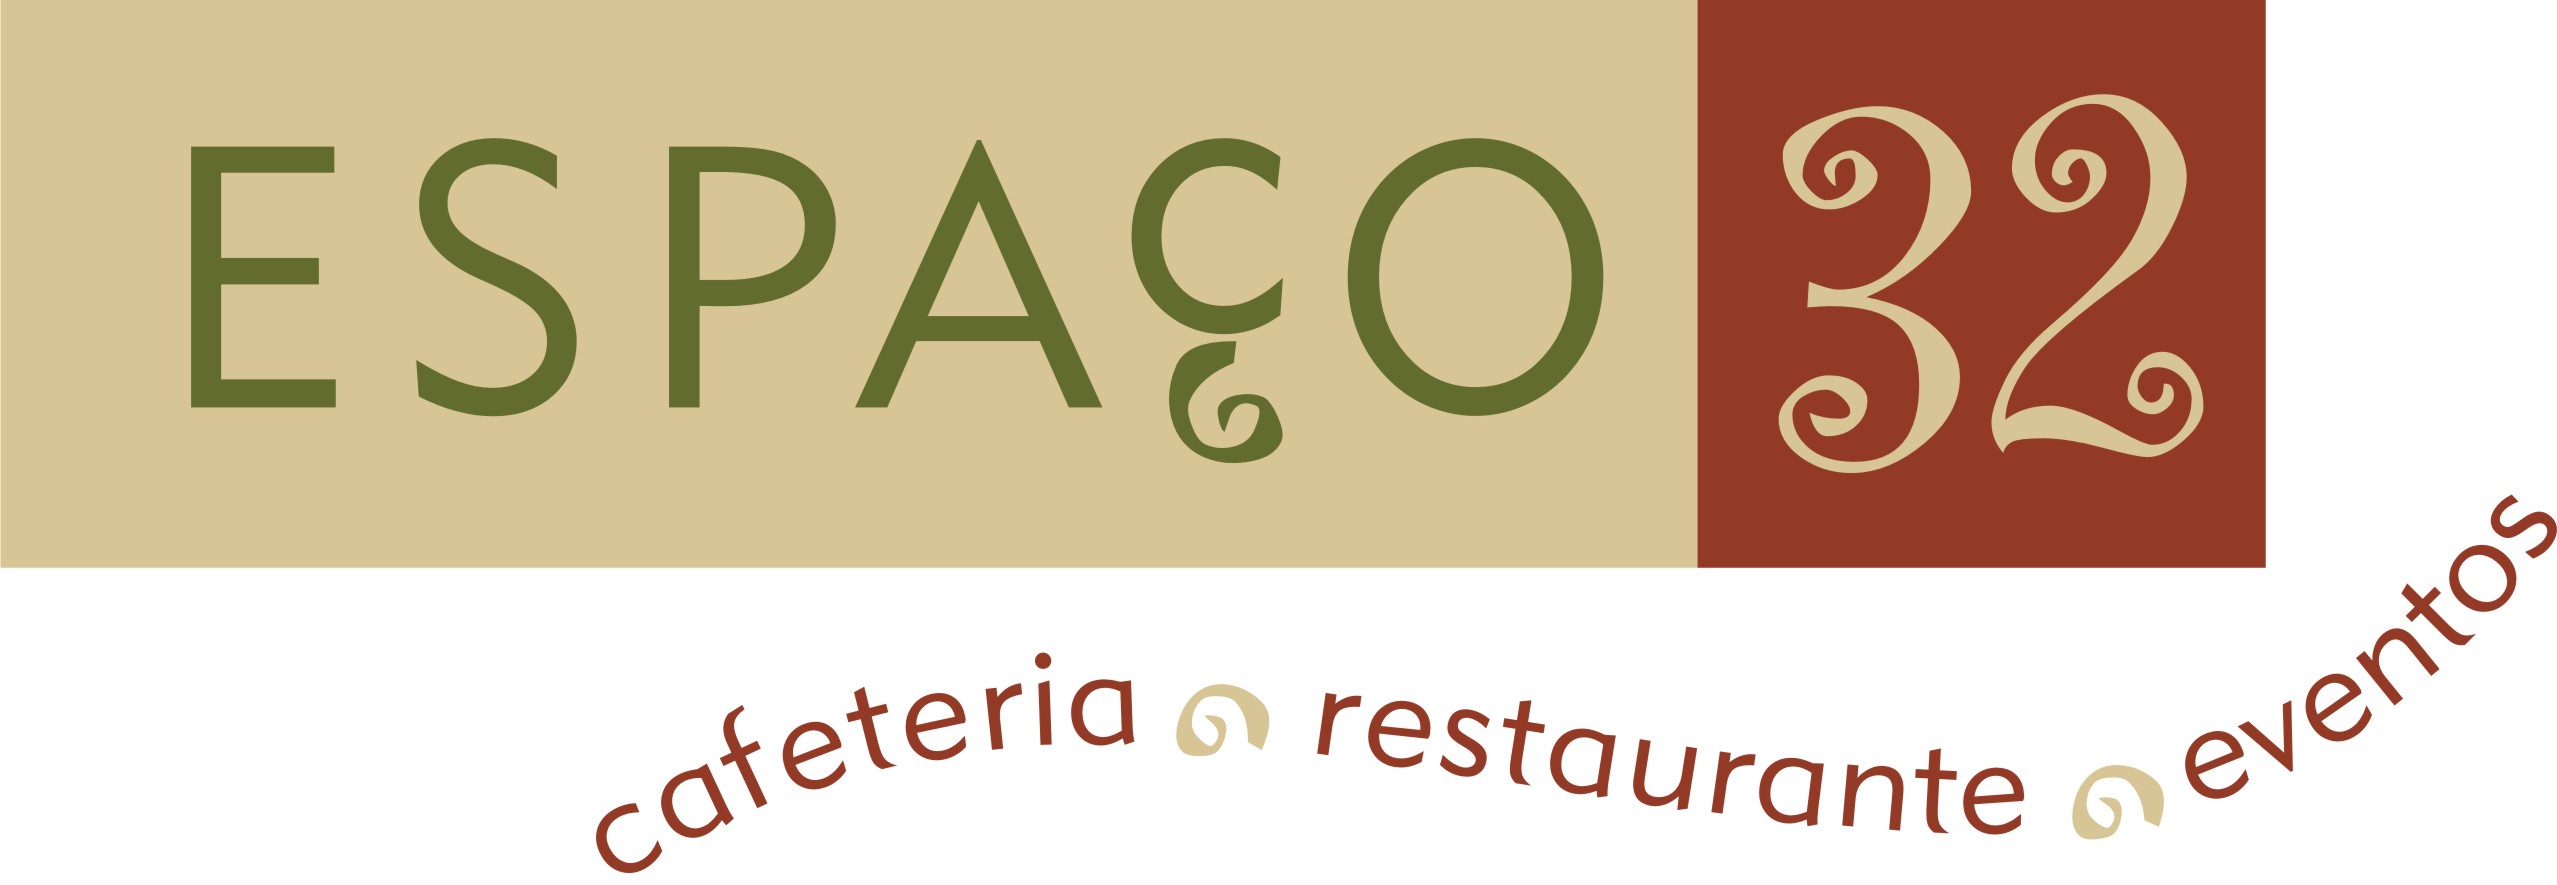 Espaço 32 - Restaurante e Cafeteria logo